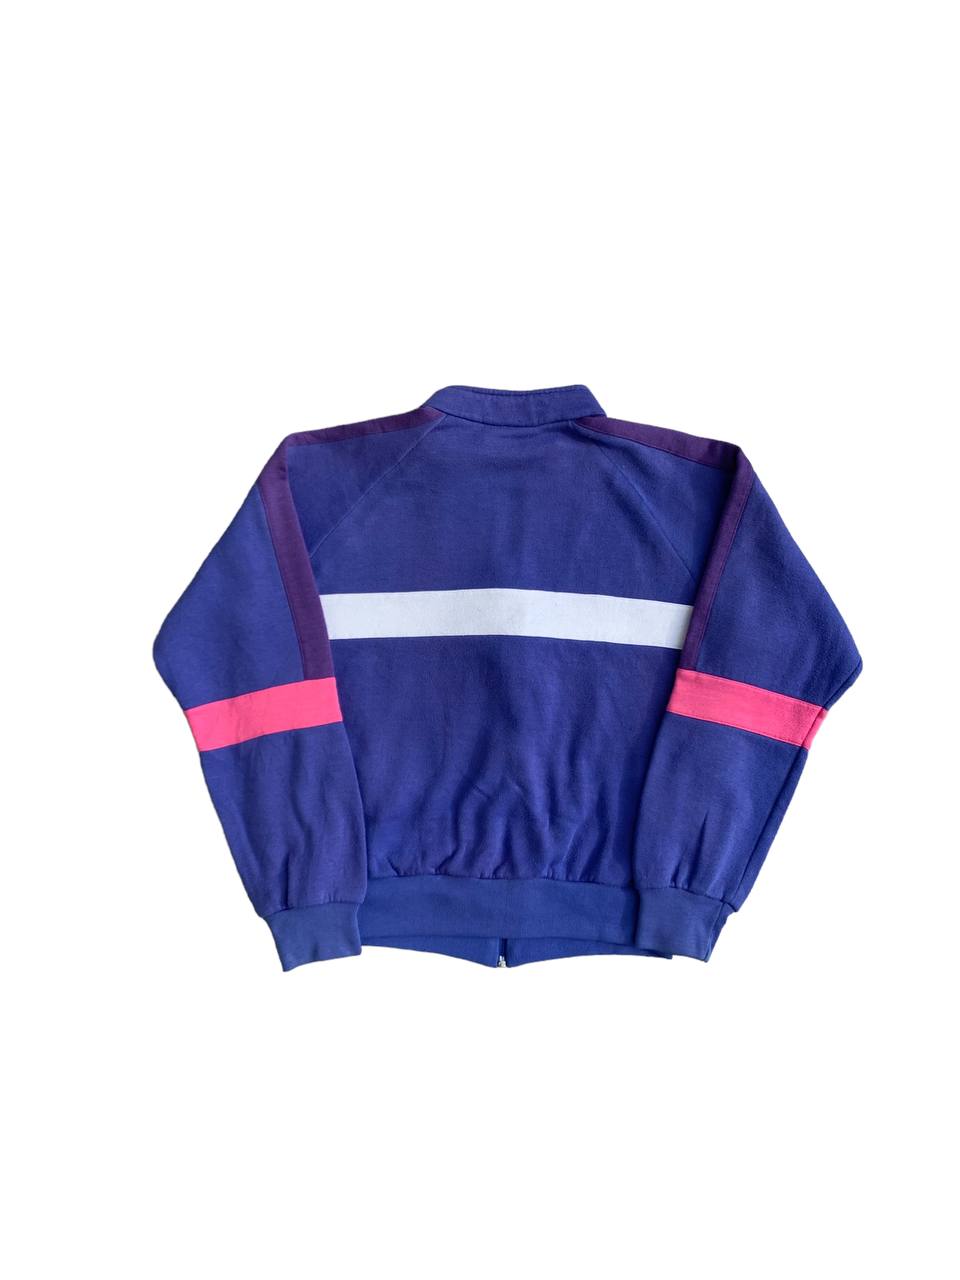 Vintage Nike Colorblock Zip Up Sweatshirt - 2